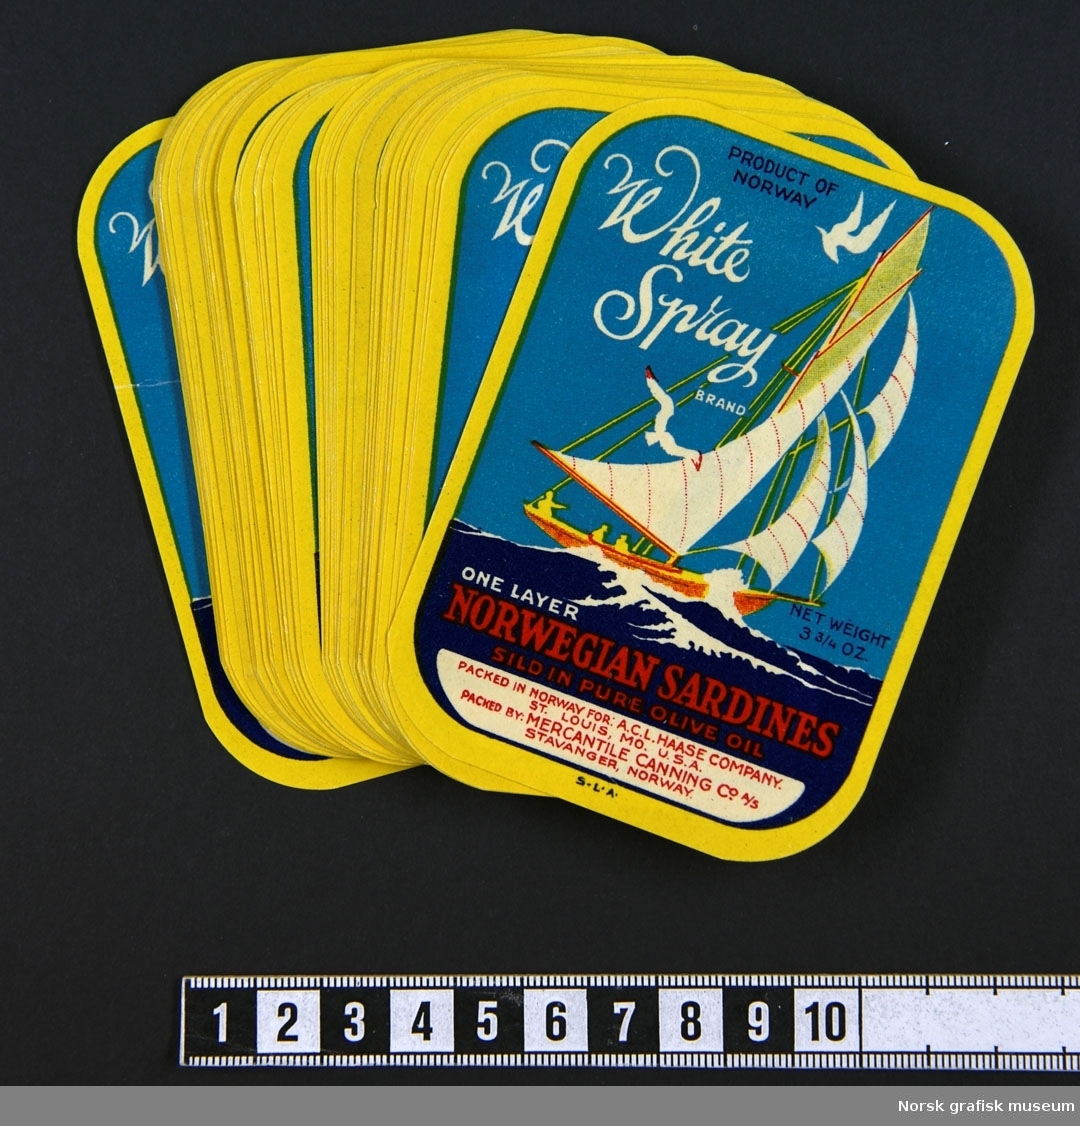 En bunke etiketter med bilde av en seilbåt med fulle seil på havet med hvite topper på bølgene. Vi kan skimte siluetten av mennesker ombord og måker rundt masten. 

"One layer Norwegian sardines sild in pure olive oil"